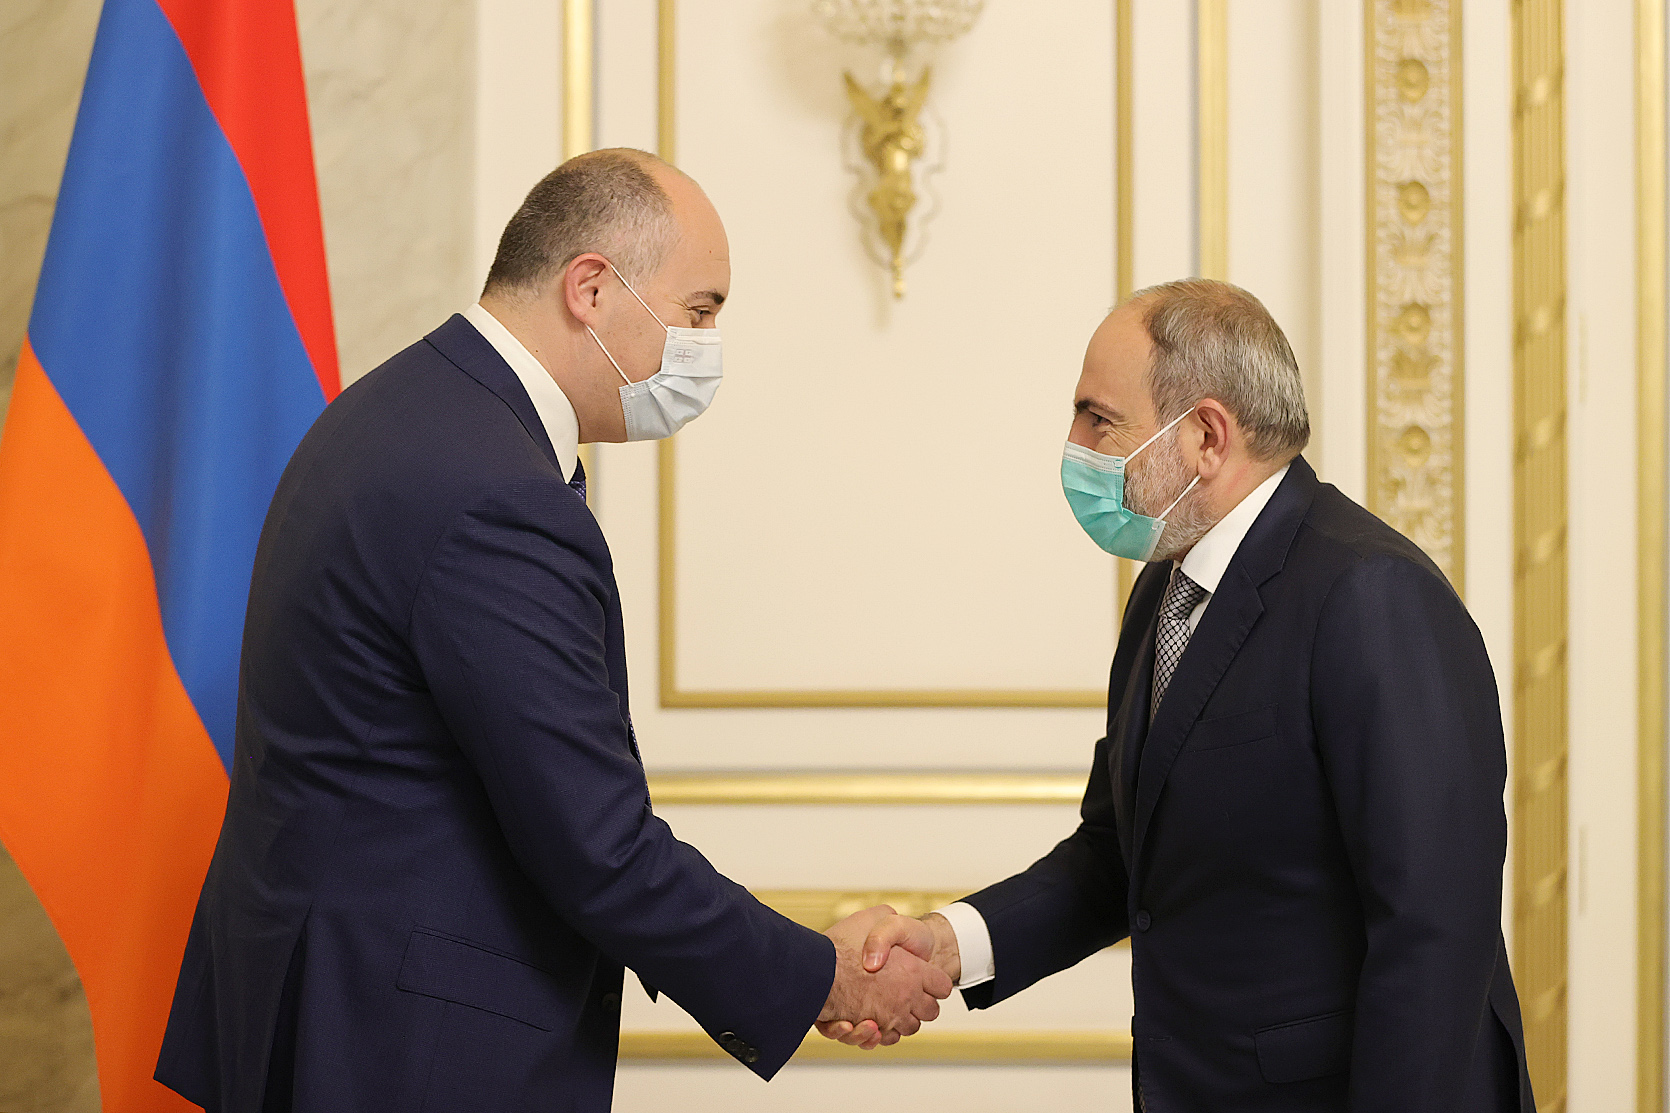 Հայաստան-Վրաստան հարաբերություններում բարձր դինամիկա է արձանագրվում. վարչապետ